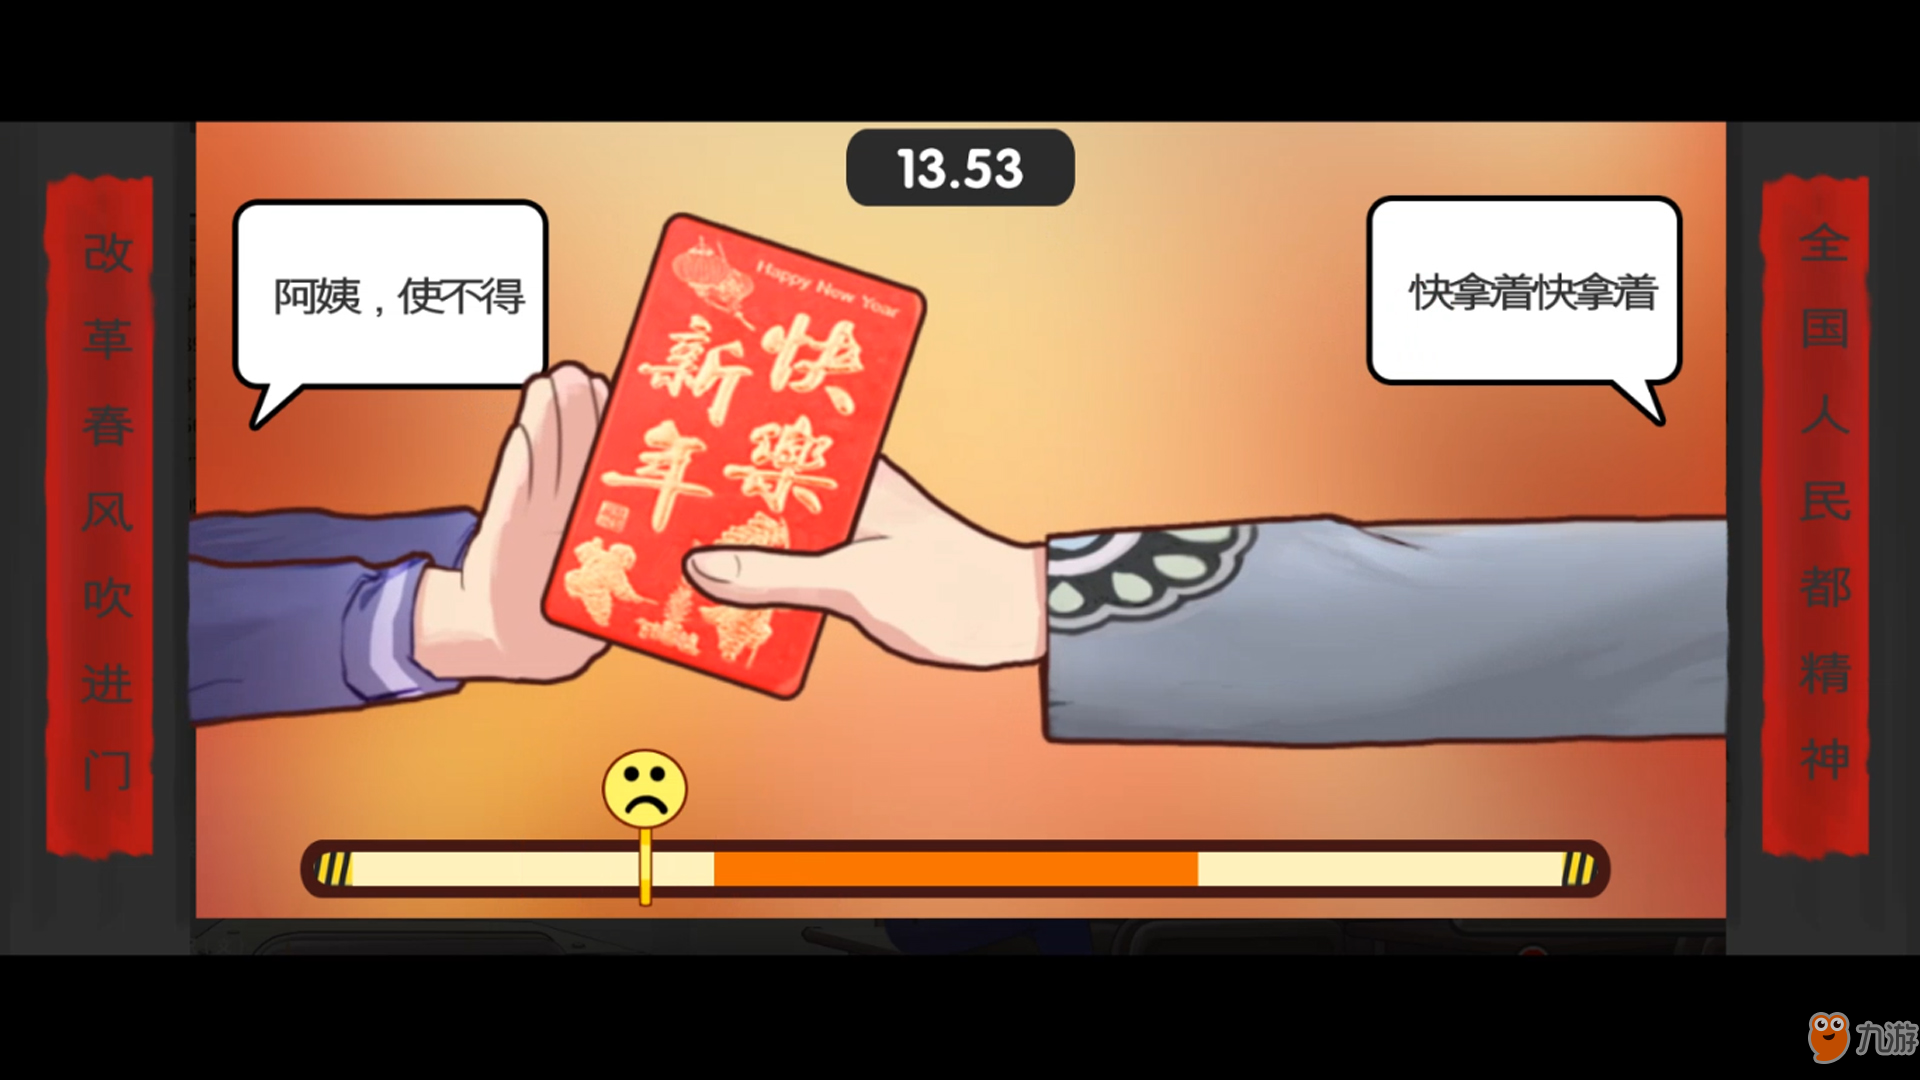 《中国式家长》Steam上“特别好评” 好评率达89%